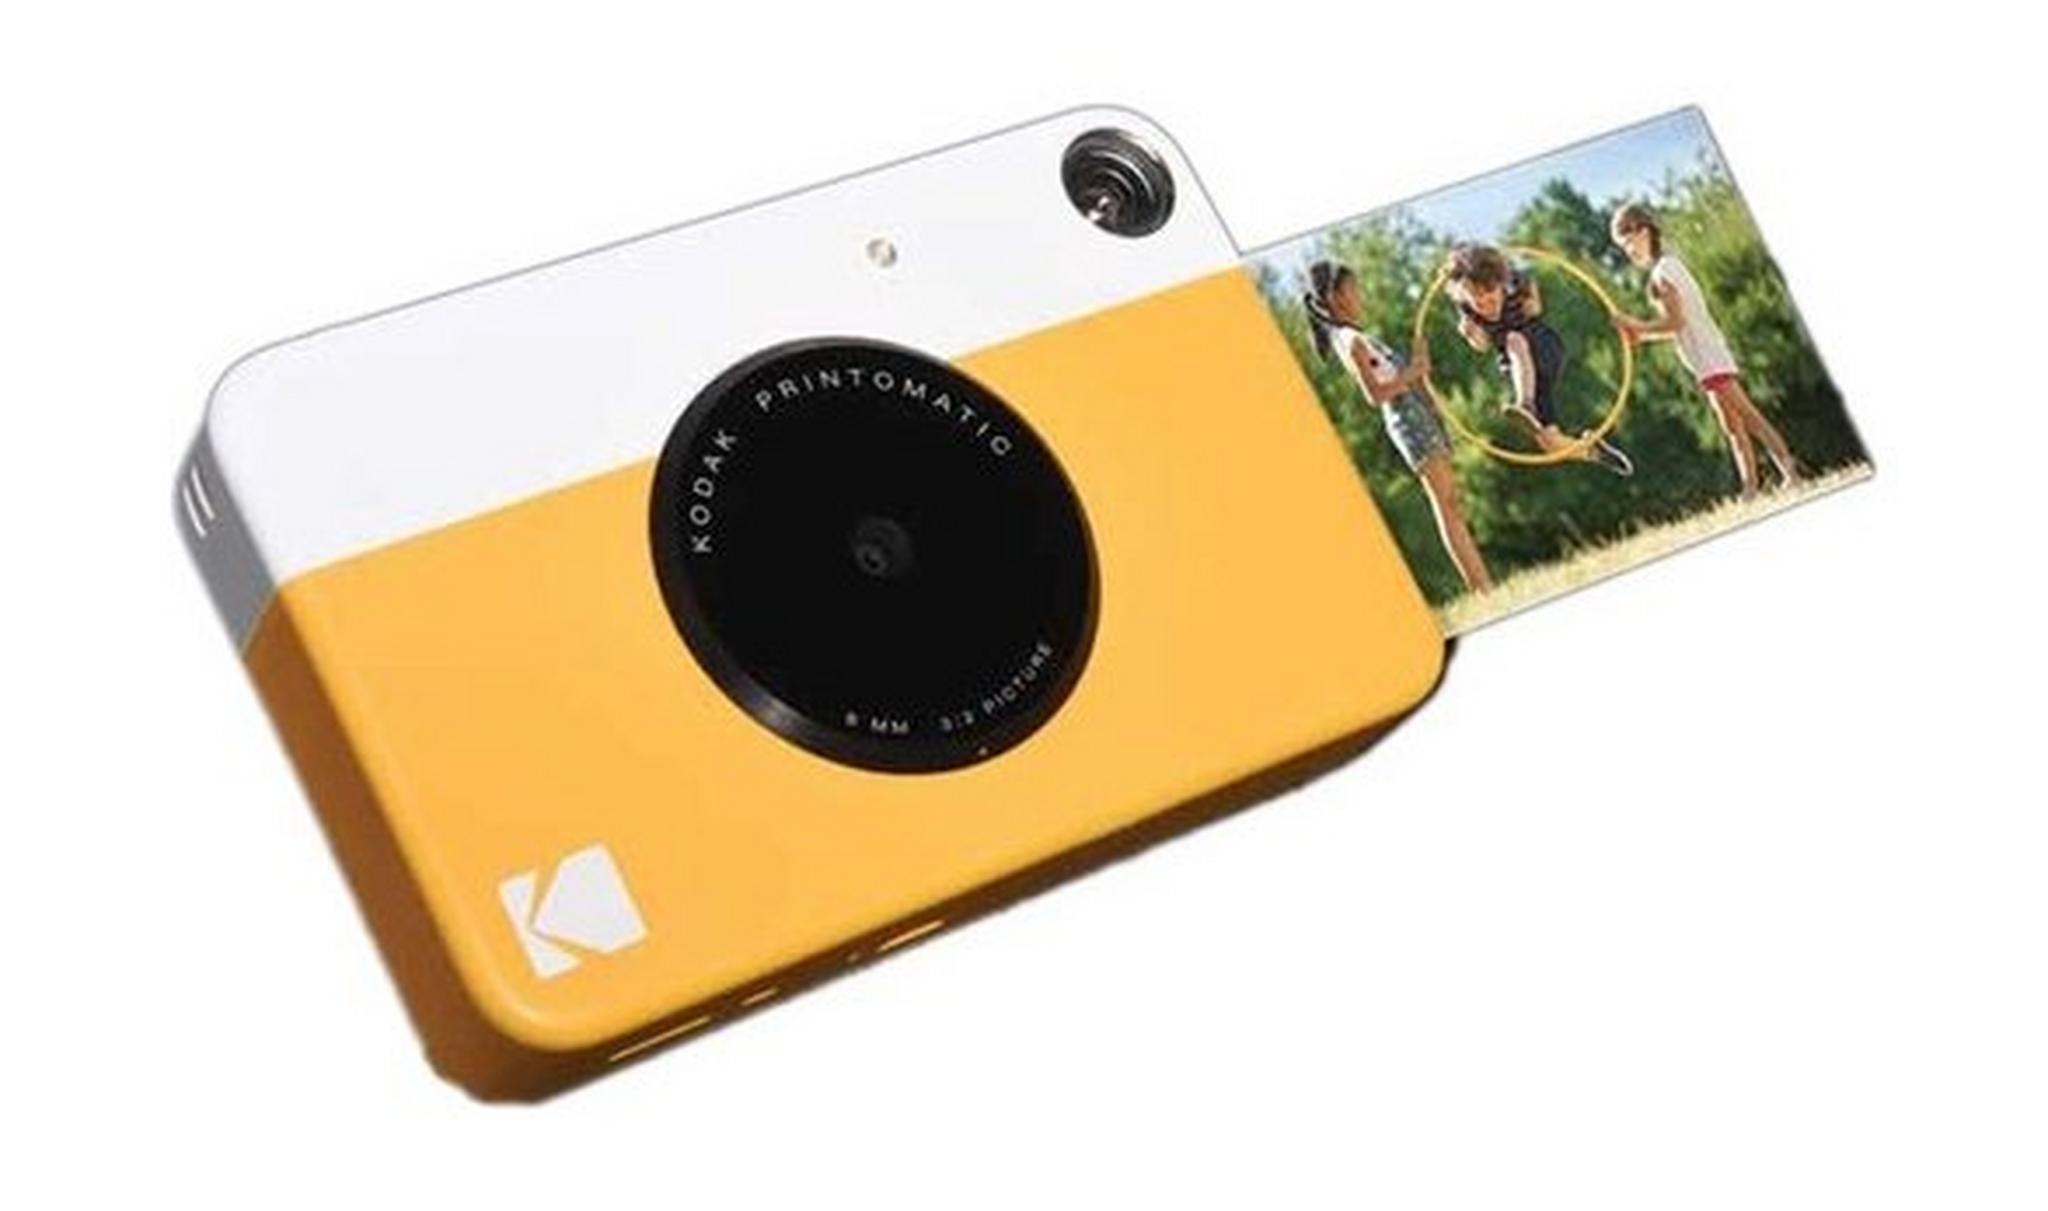 كاميرا كوداك برينتوماتيك الرقمية الفورية - أصفر